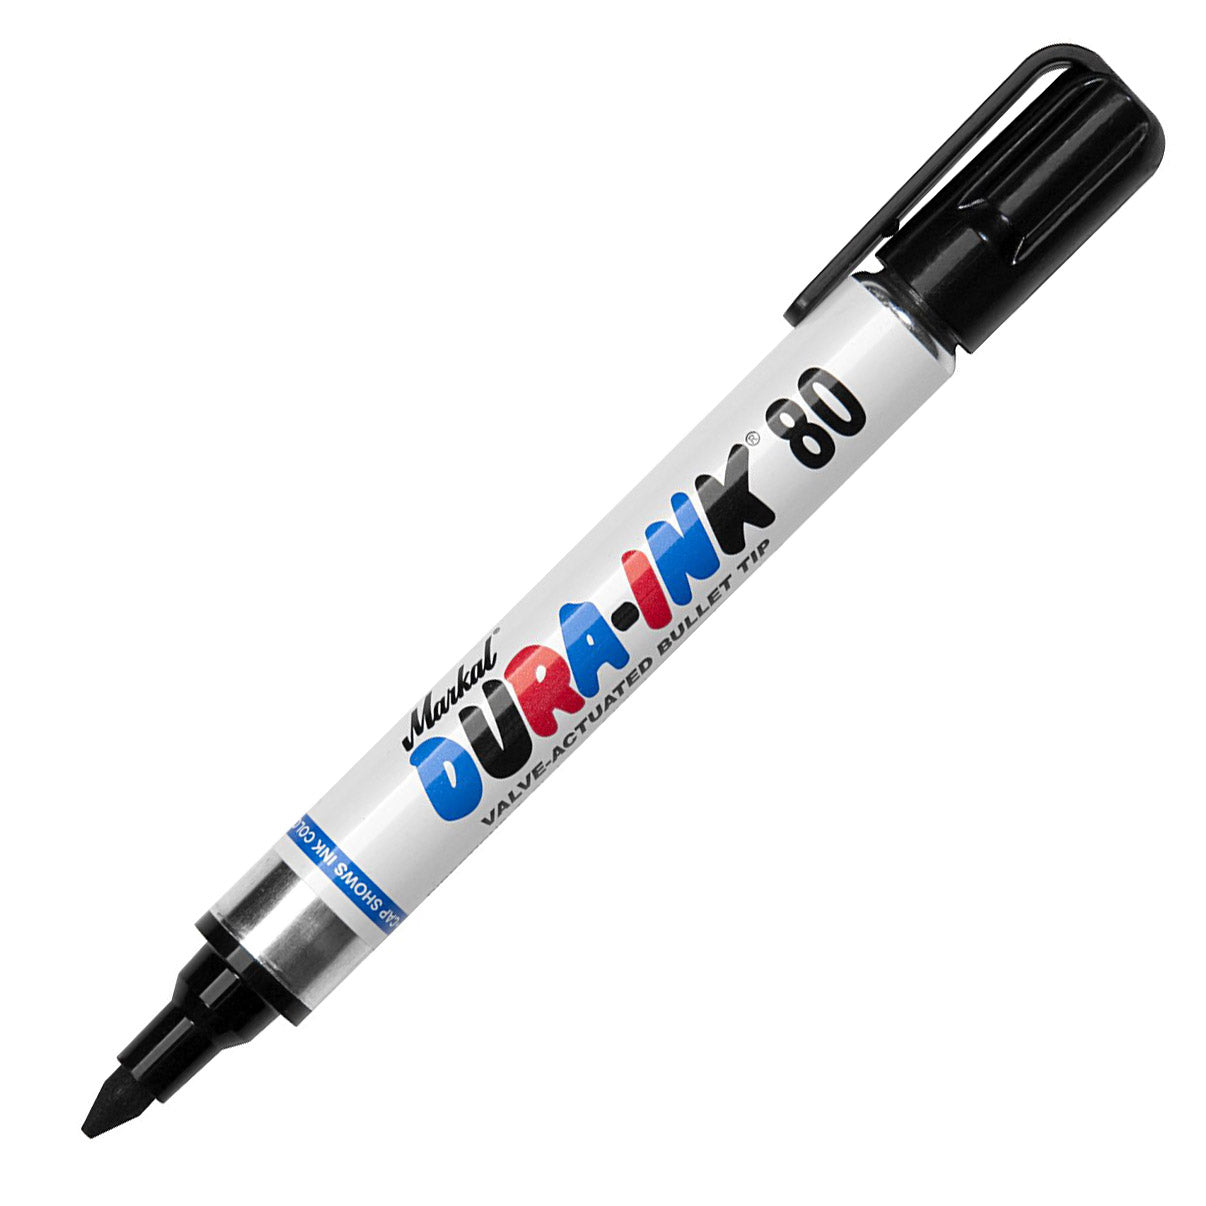 Markal Dura-Ink 15 - Fine Tip Marker - Black